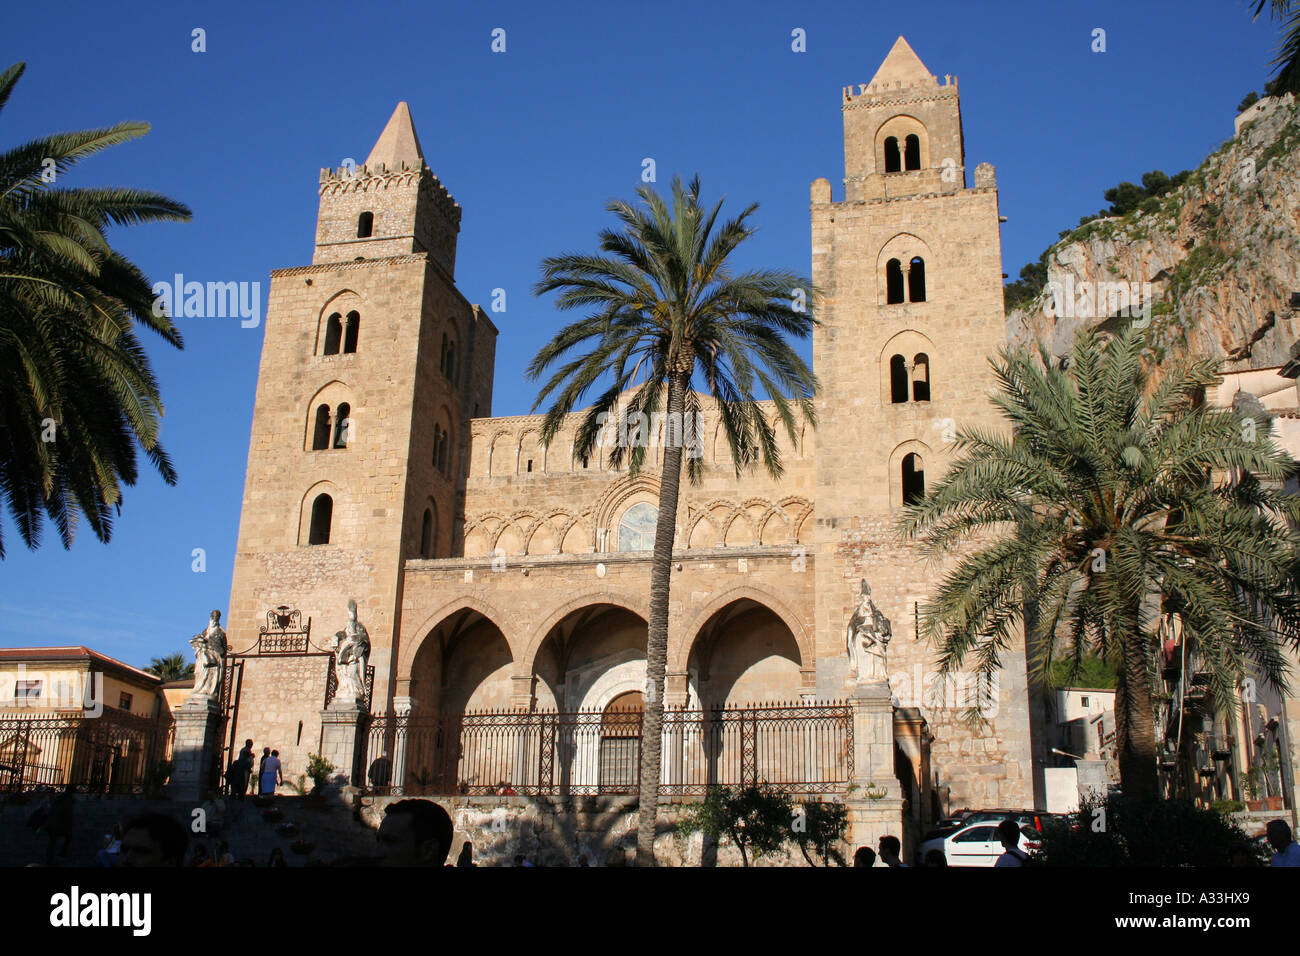 Twin-cattedrale turrito presso l'attraente centro storico città costiera di Cefalù, Sicilia, Italia. Foto Stock